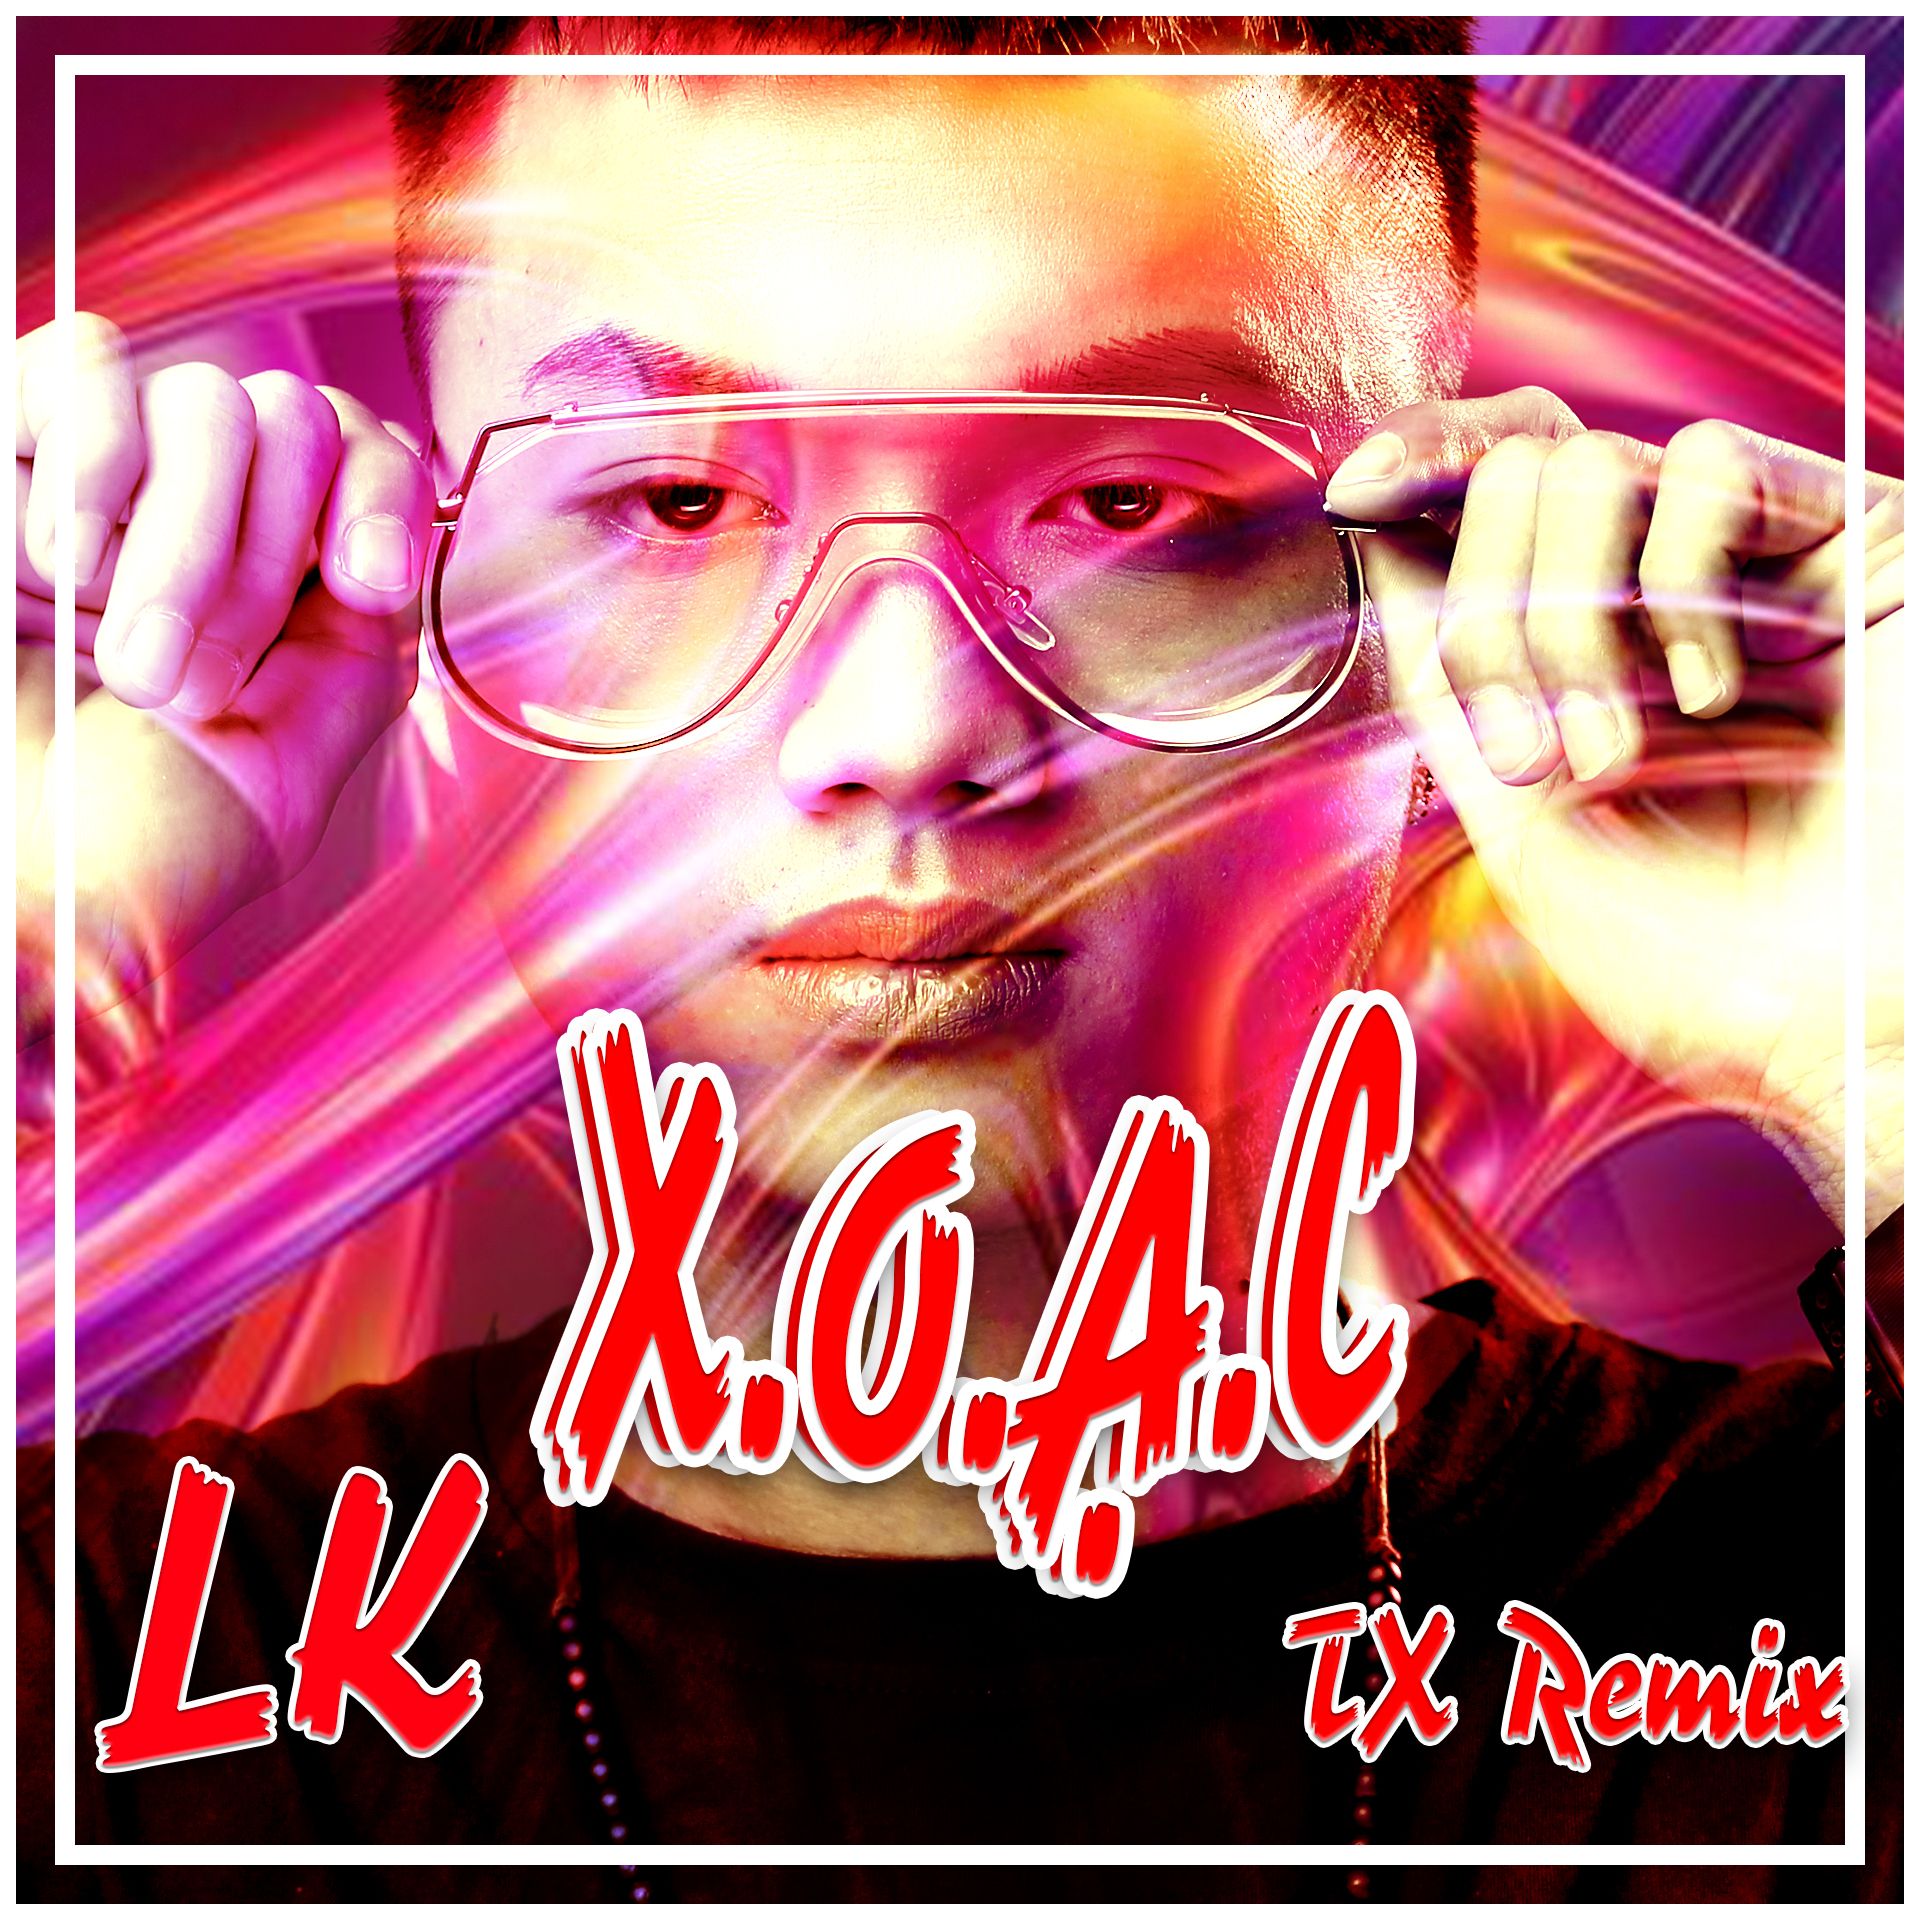 Khuphela LK - X.O.Ạ.C - DJ TX REMIX